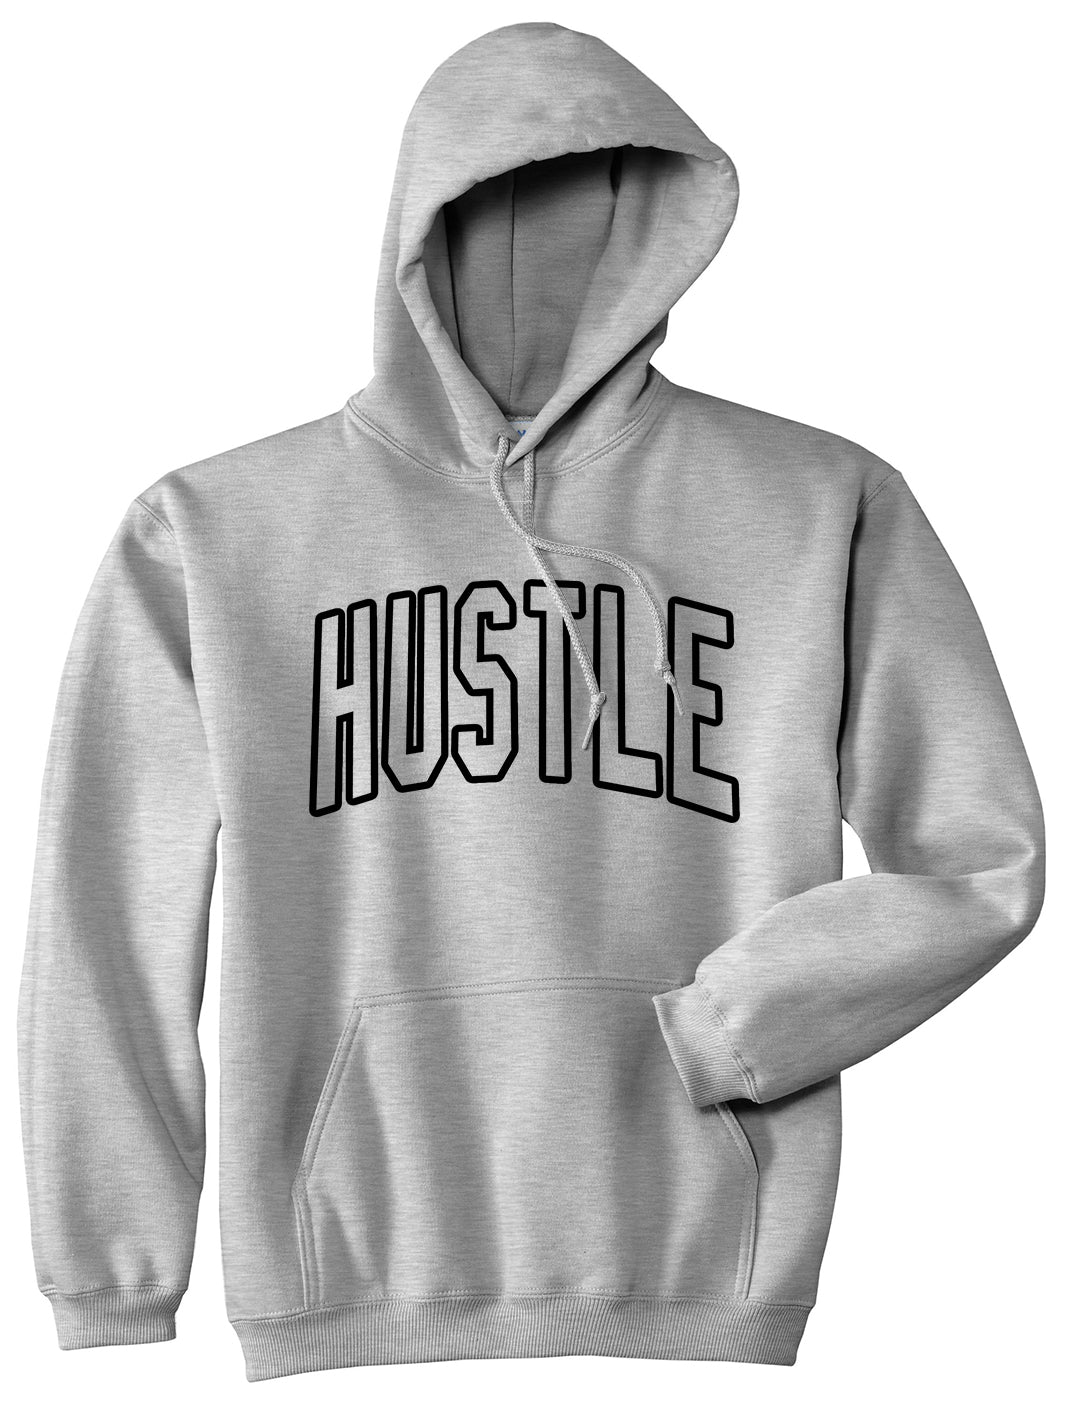 Hustle Outline Mens Pullover Hoodie Grey